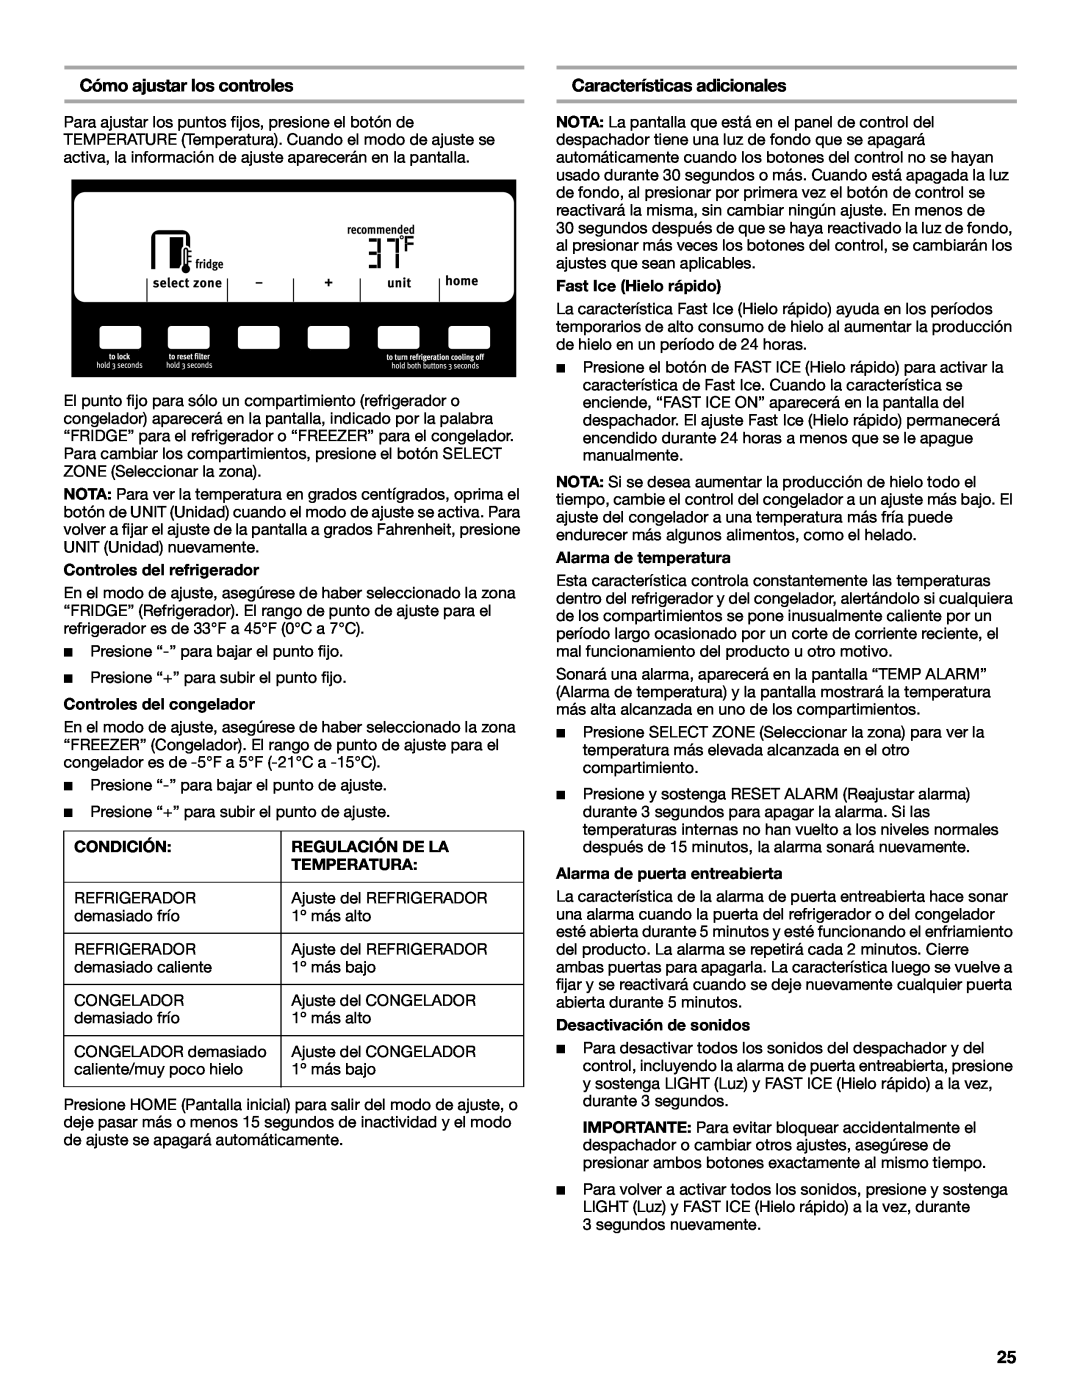 Maytag W10321481A Cómo ajustar los controles, Características adicionales, Controles del refrigerador, Condición 